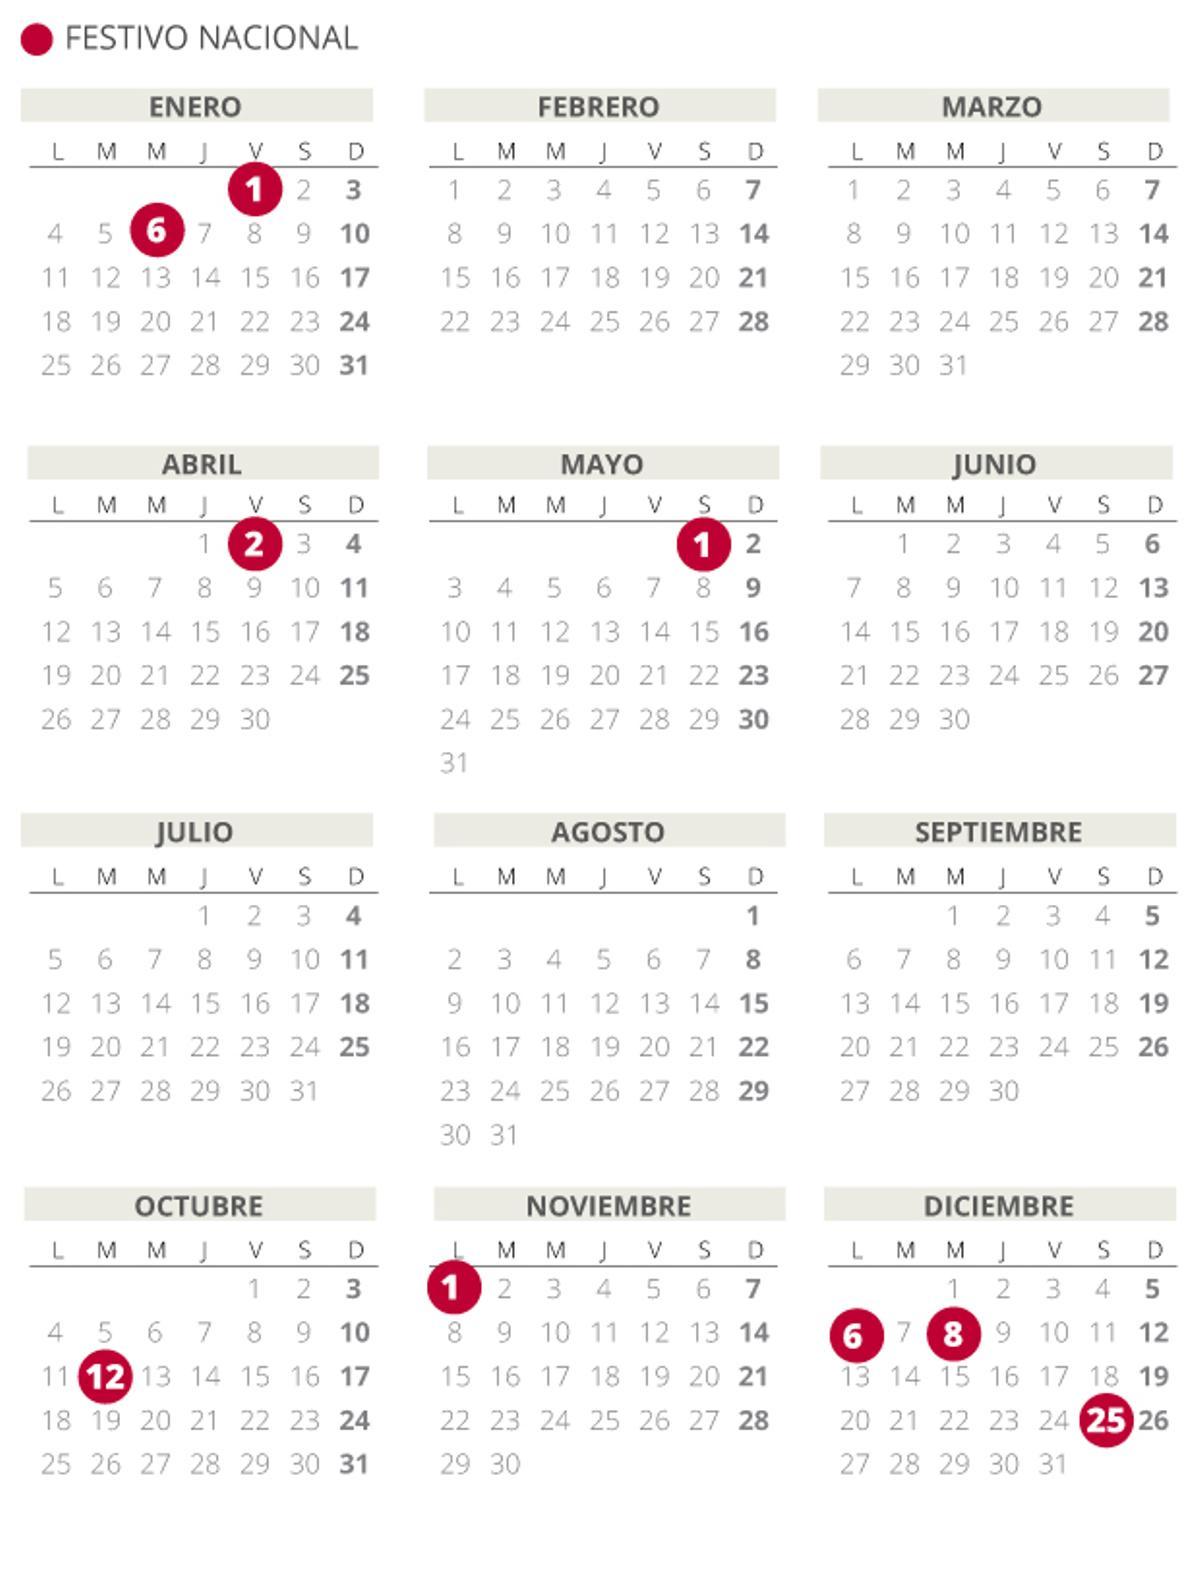 w-calendario-laboral-2021-espana